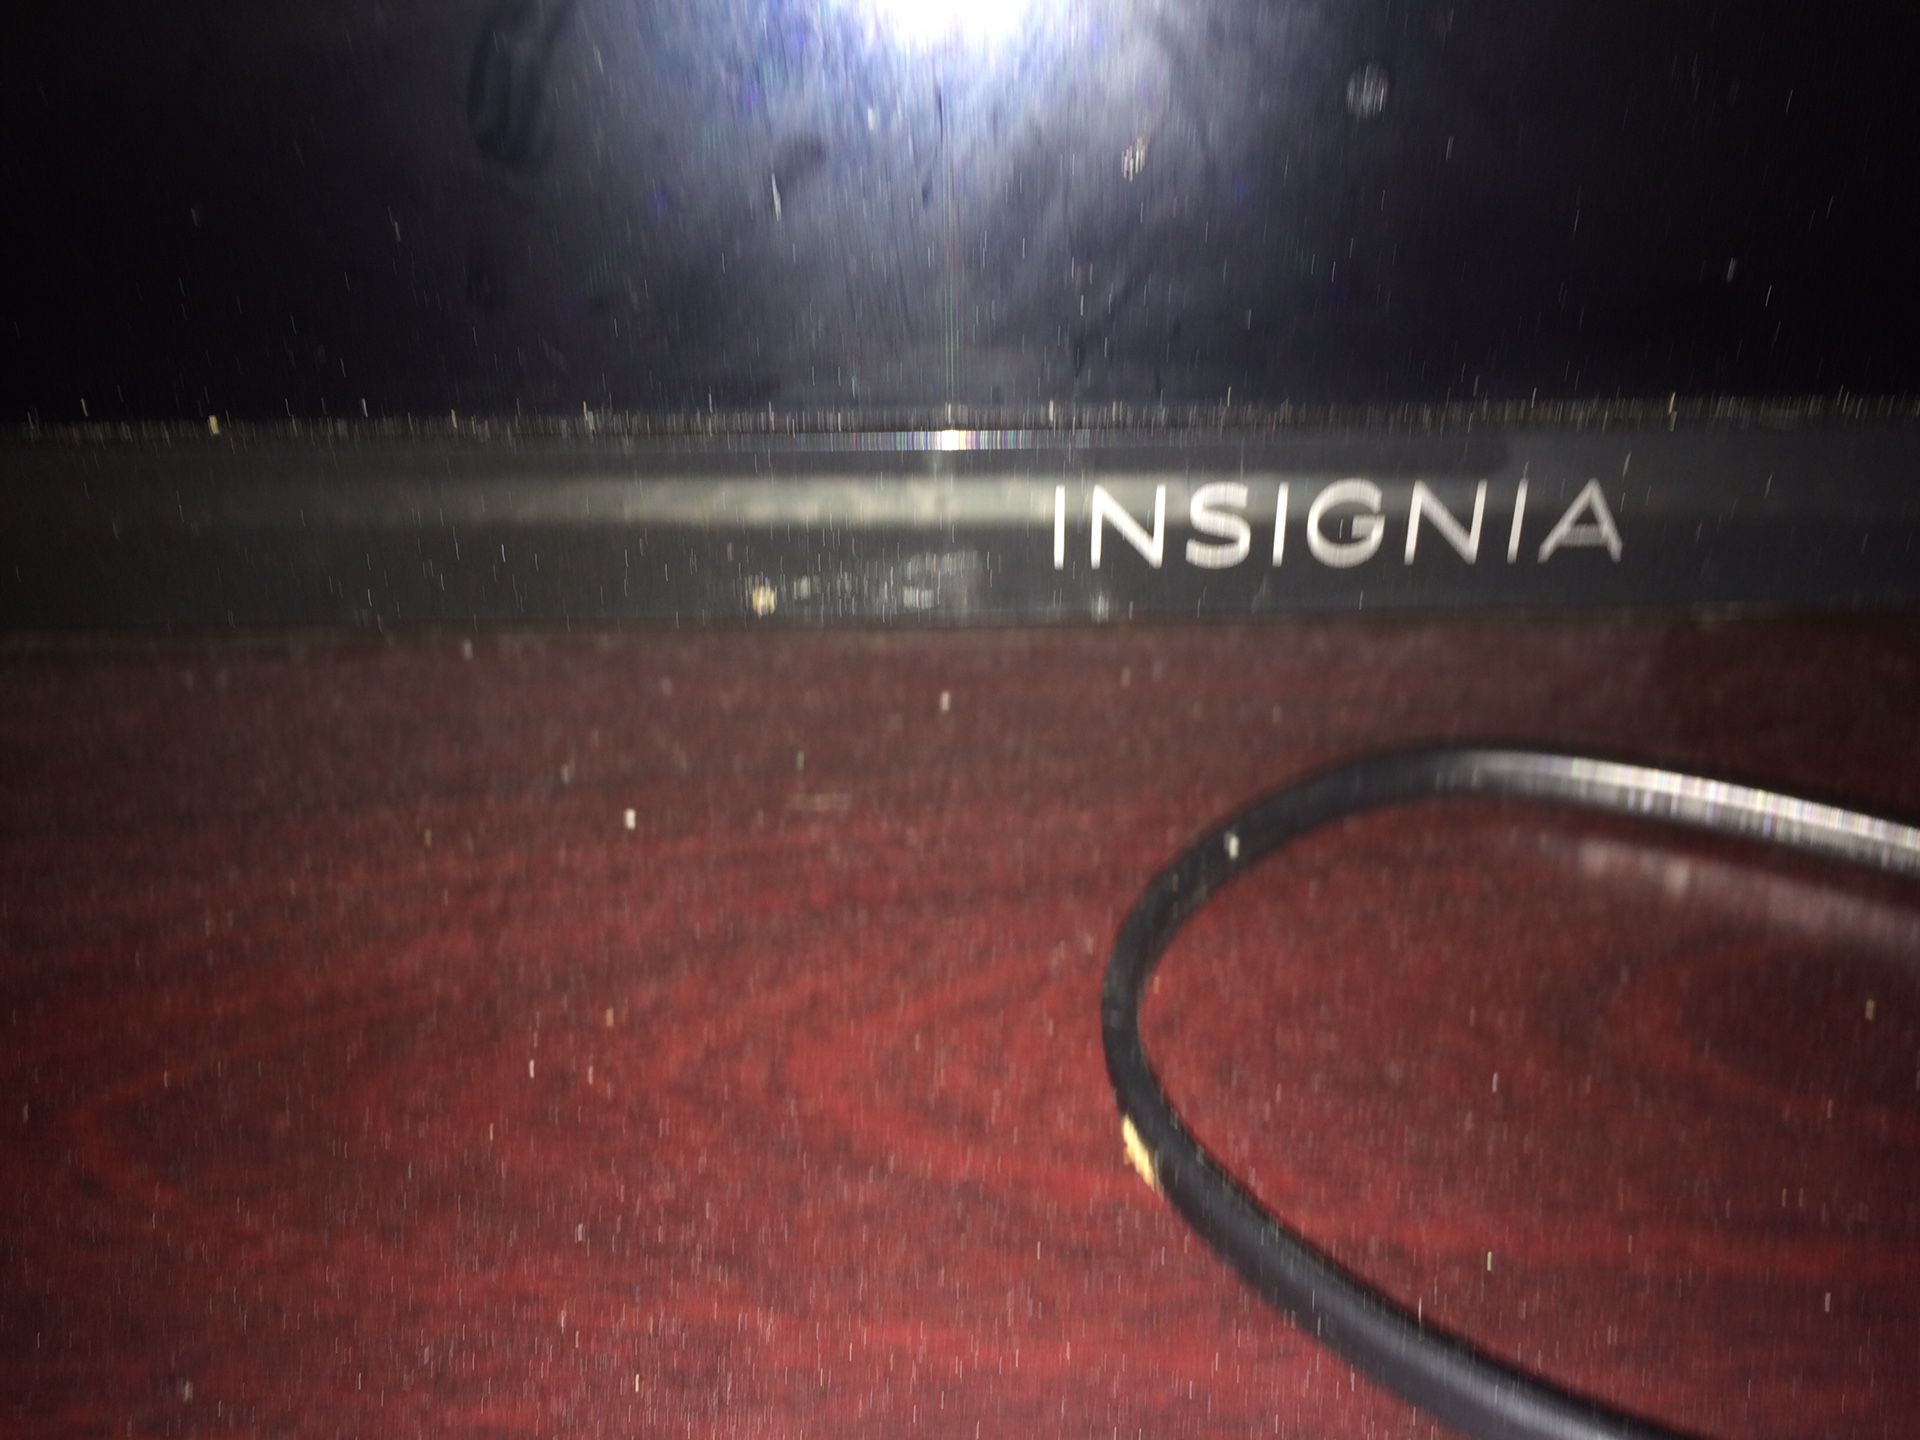 Insignia 39.5in Amazon Fire TV